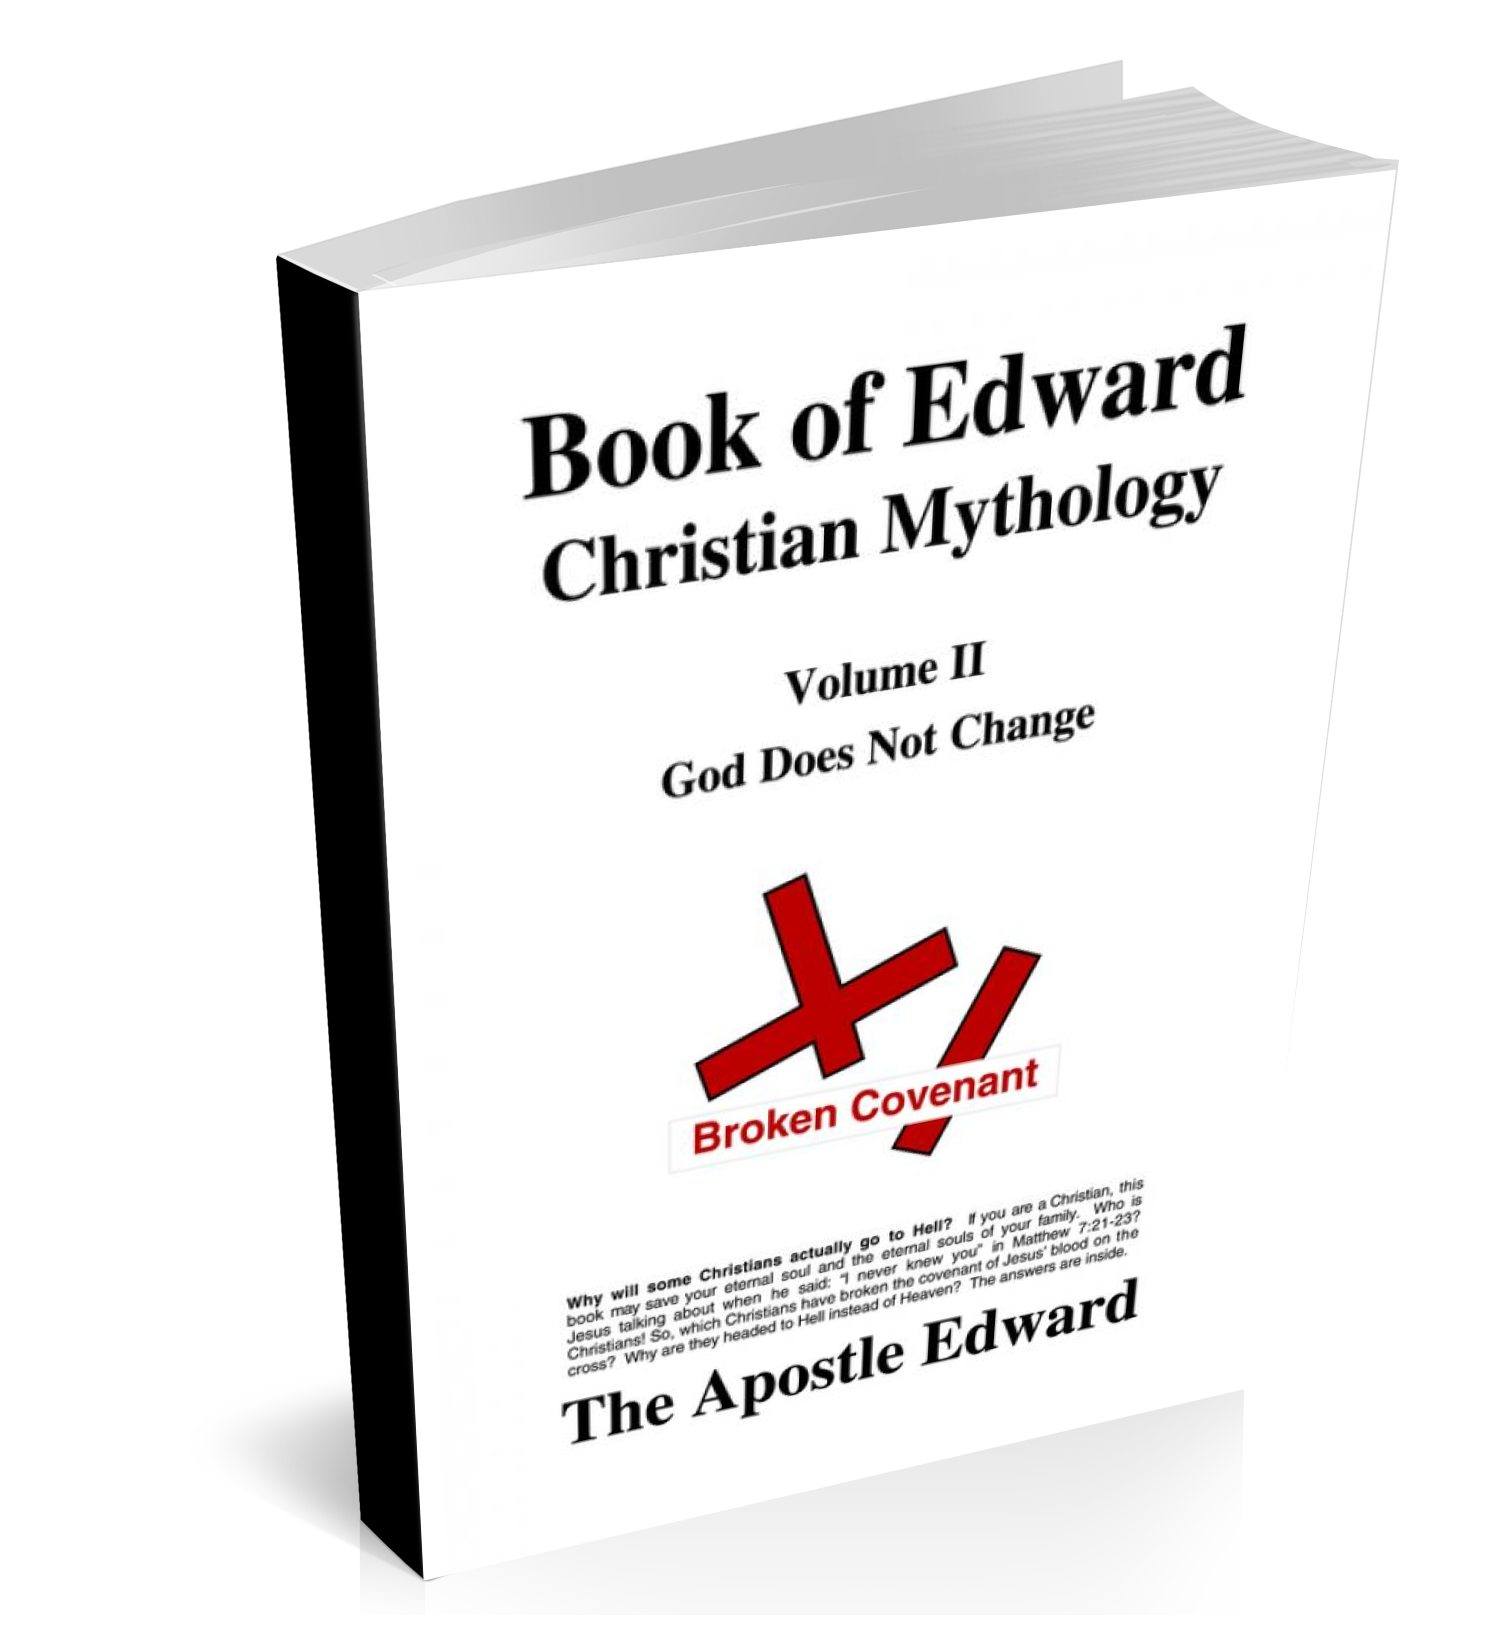 Image of Apostle Edward's Book of Edward Volume II